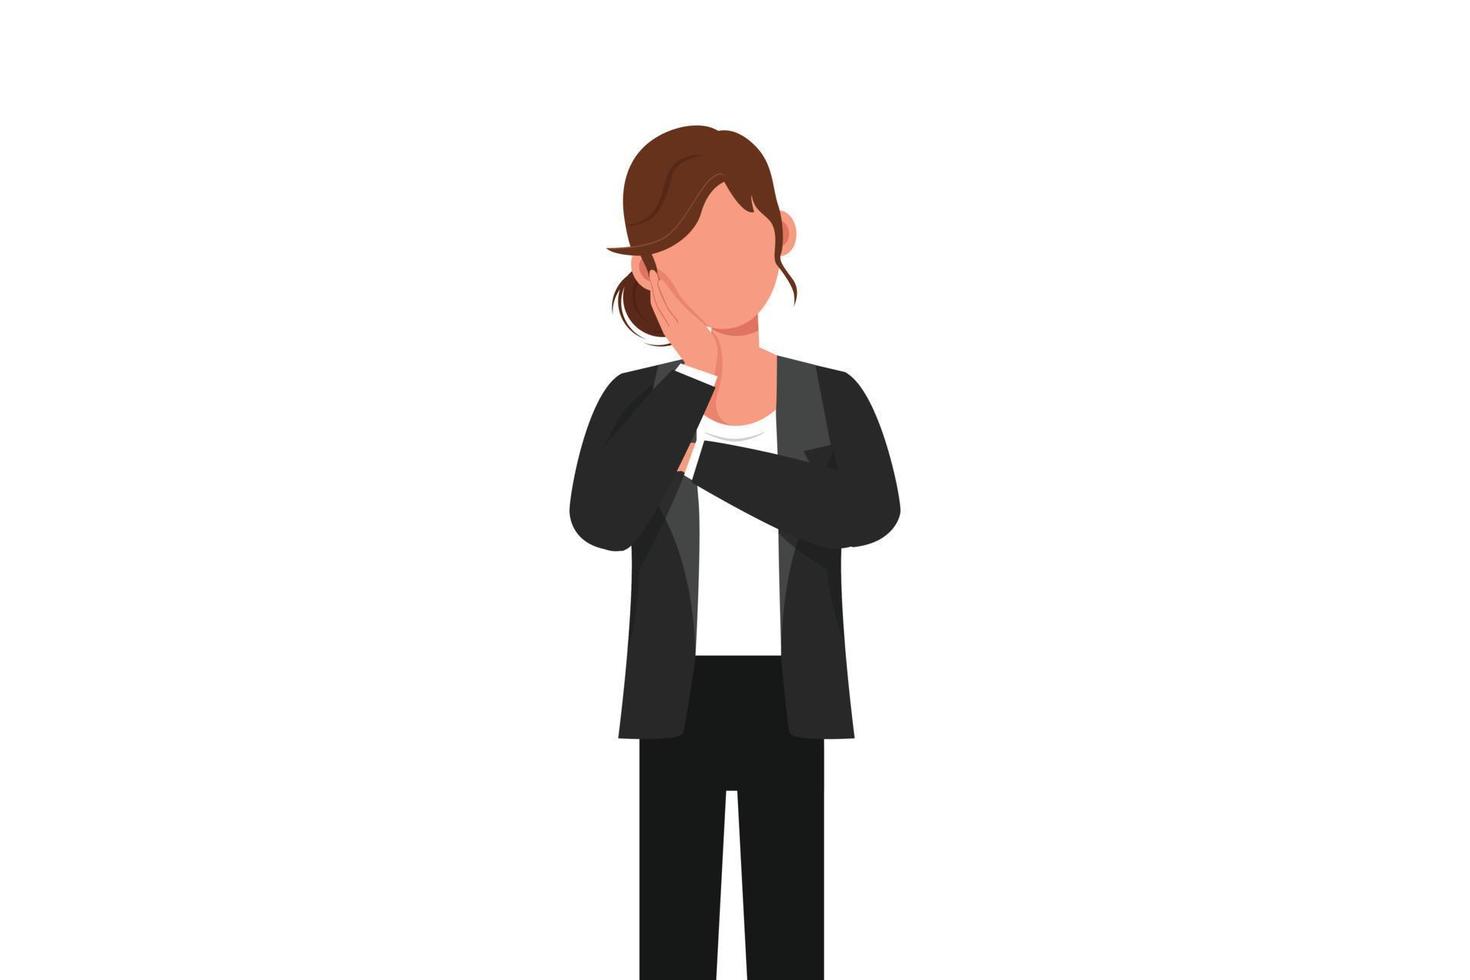 business flat cartoon style zeichnung geschäftsfrau hält hand auf wange mit gekreuzter hand. gelangweilte müde Person, die die Hand im Gesicht hält. Frau leidet unter Zahnschmerzen. Grafikdesign-Vektorillustration vektor